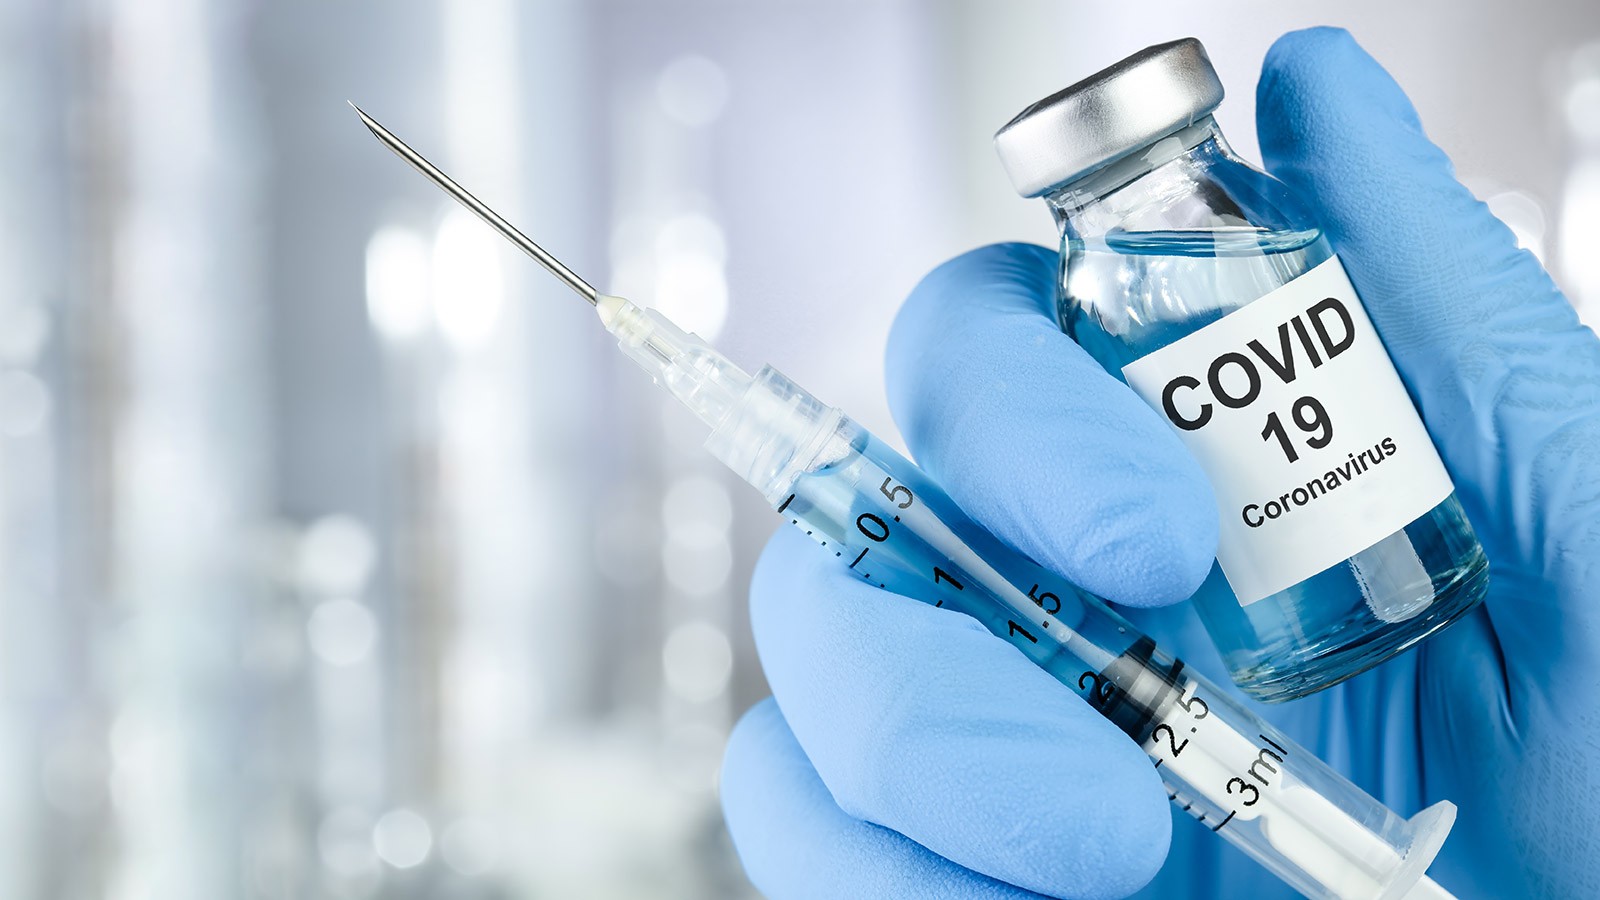 Advierten sobre estafas en Internet ligadas con la vacuna contra el covid